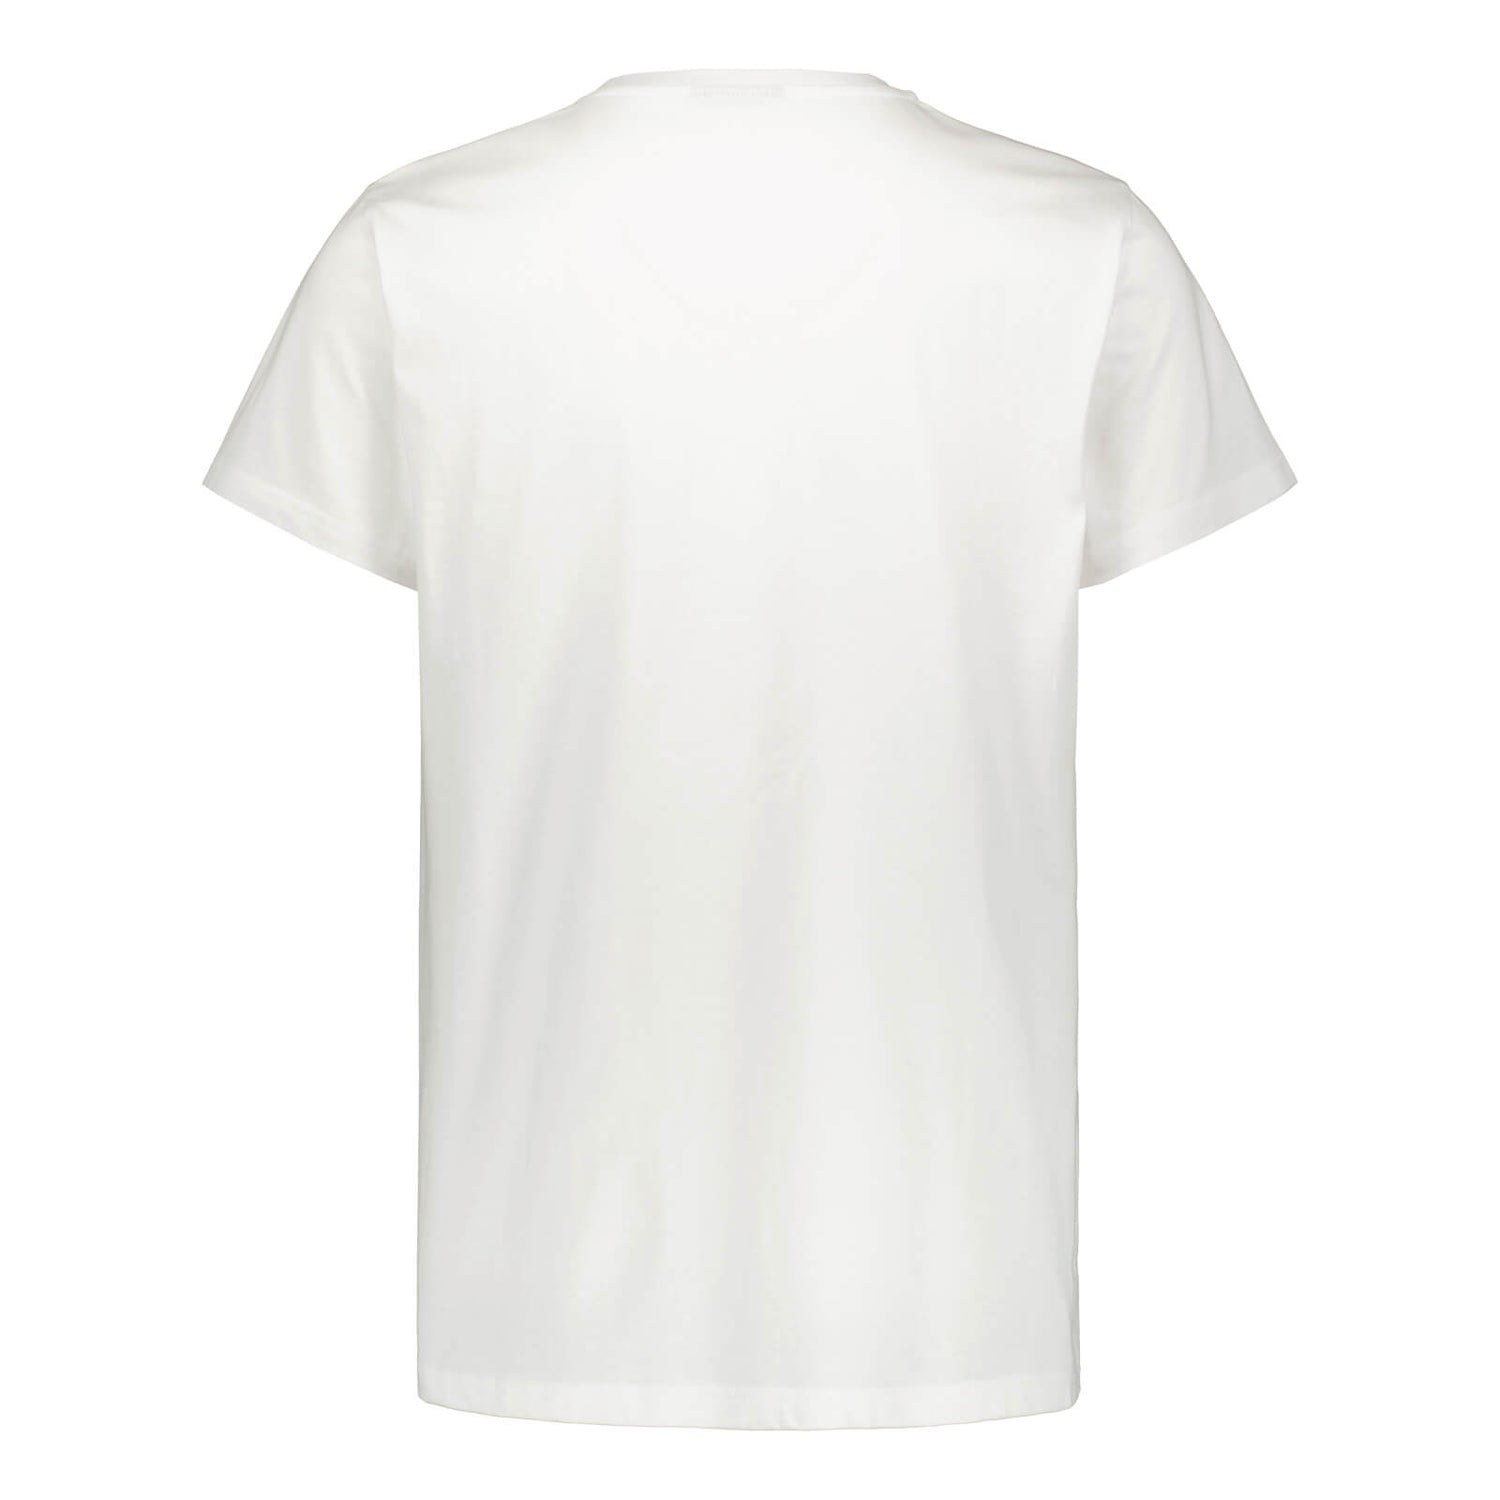 Thumb of Jari Graphic Logo T-shirt, White